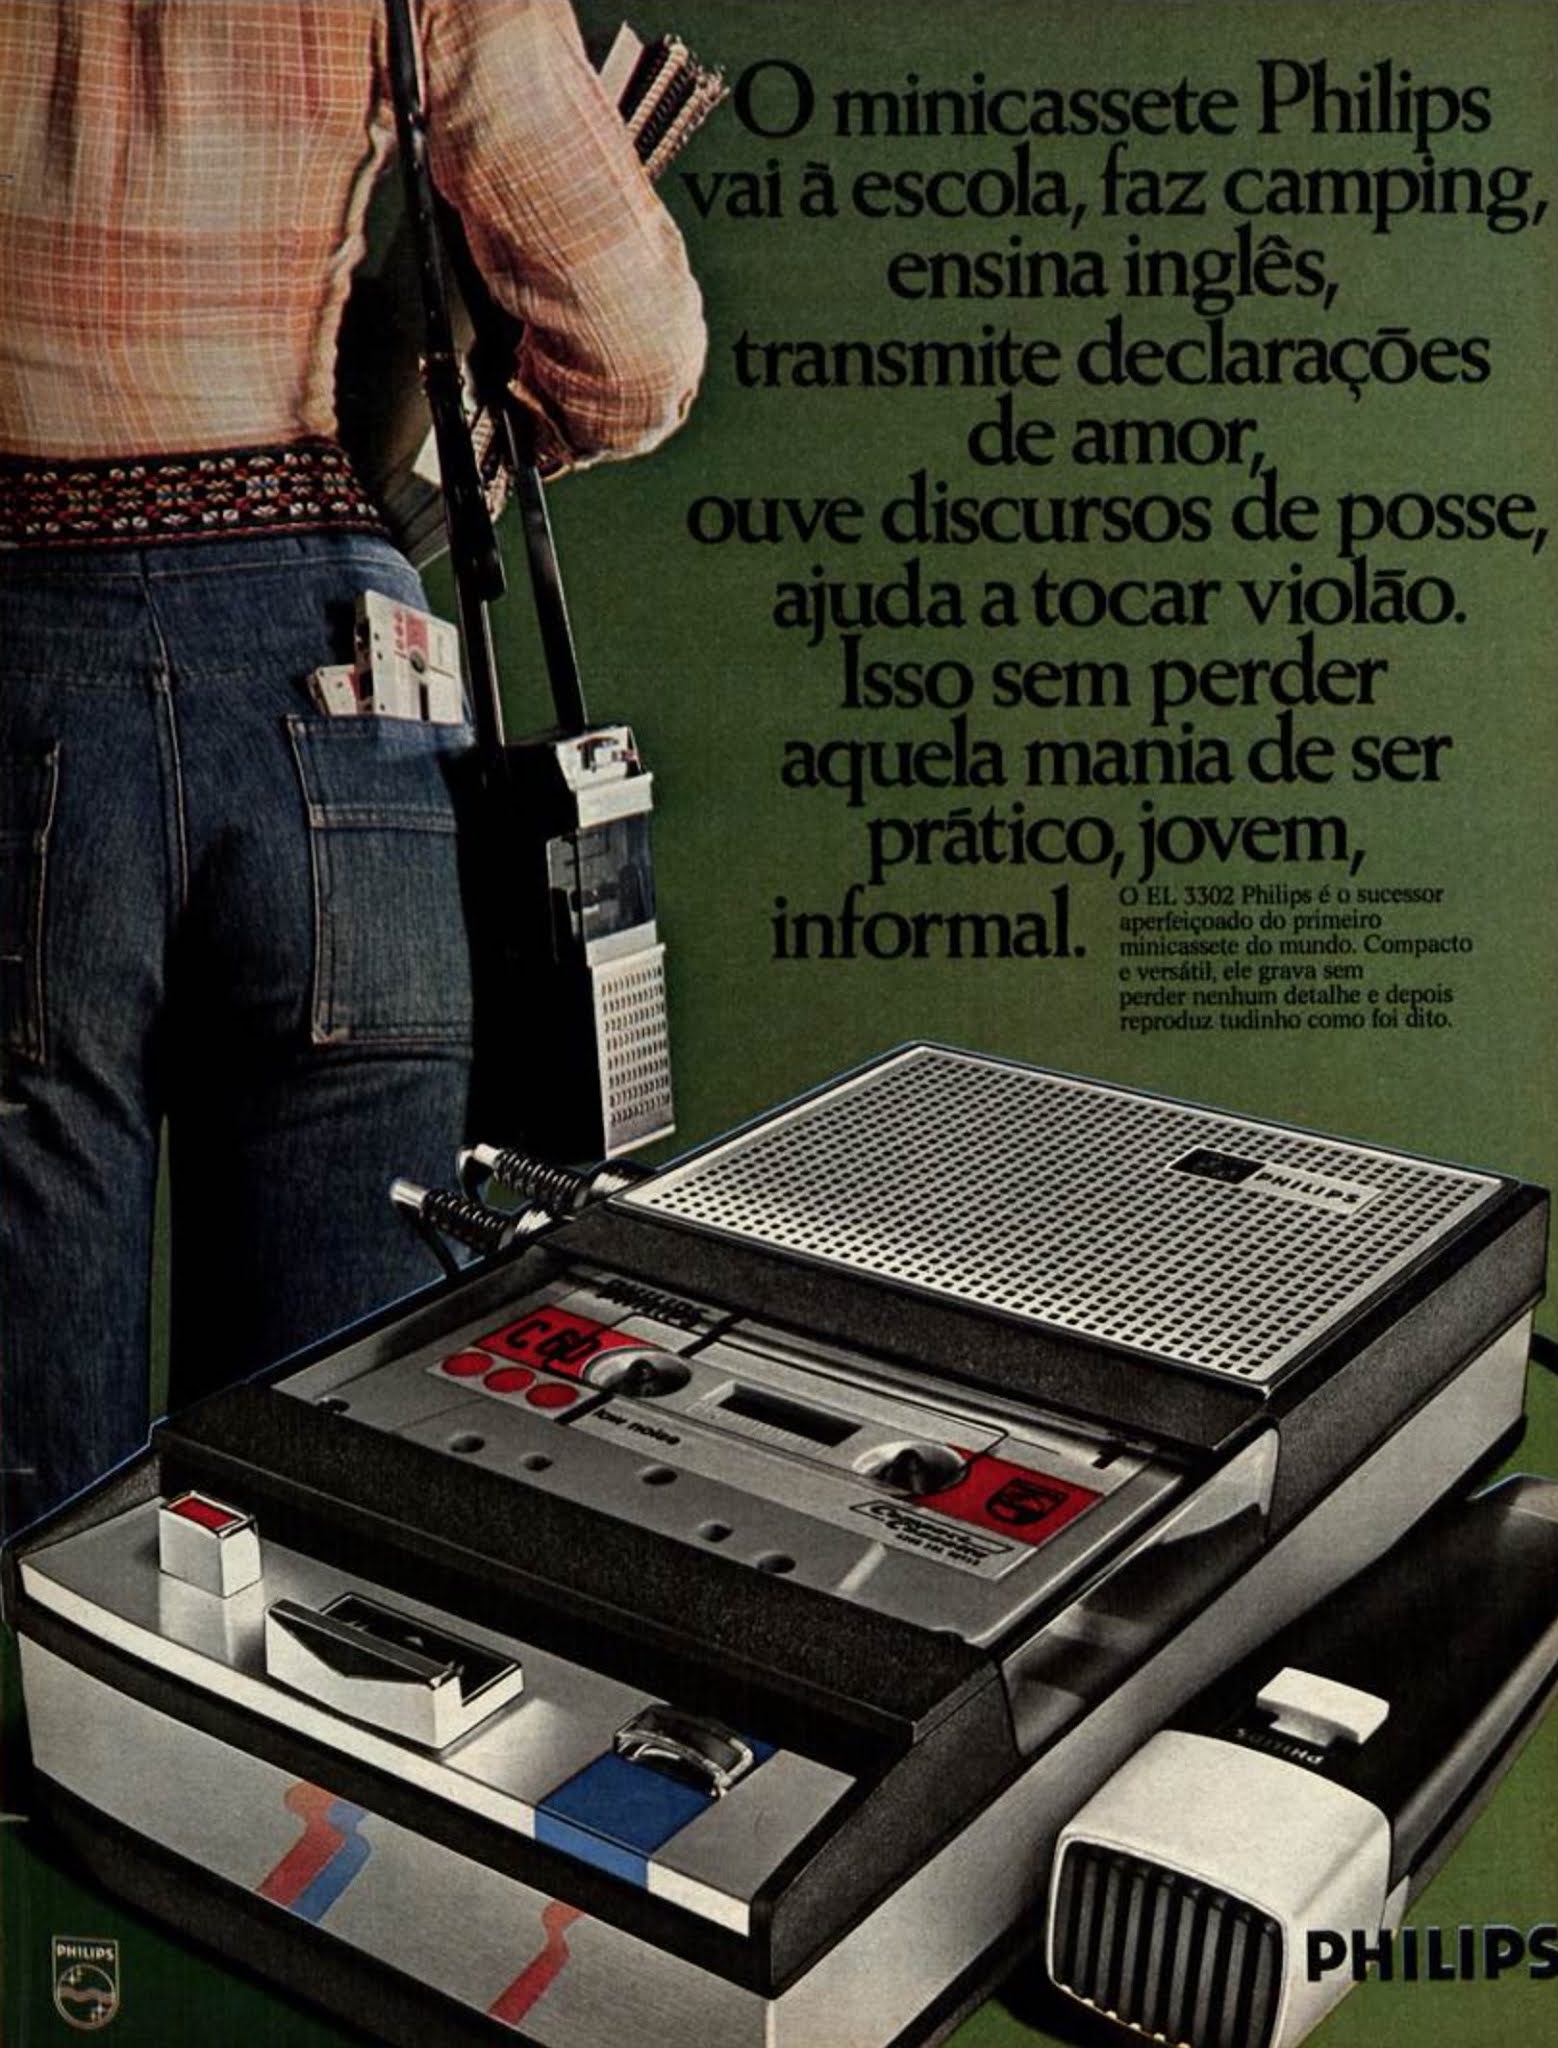 Propaganda antiga do Minicassete Philips veiculada em 1976